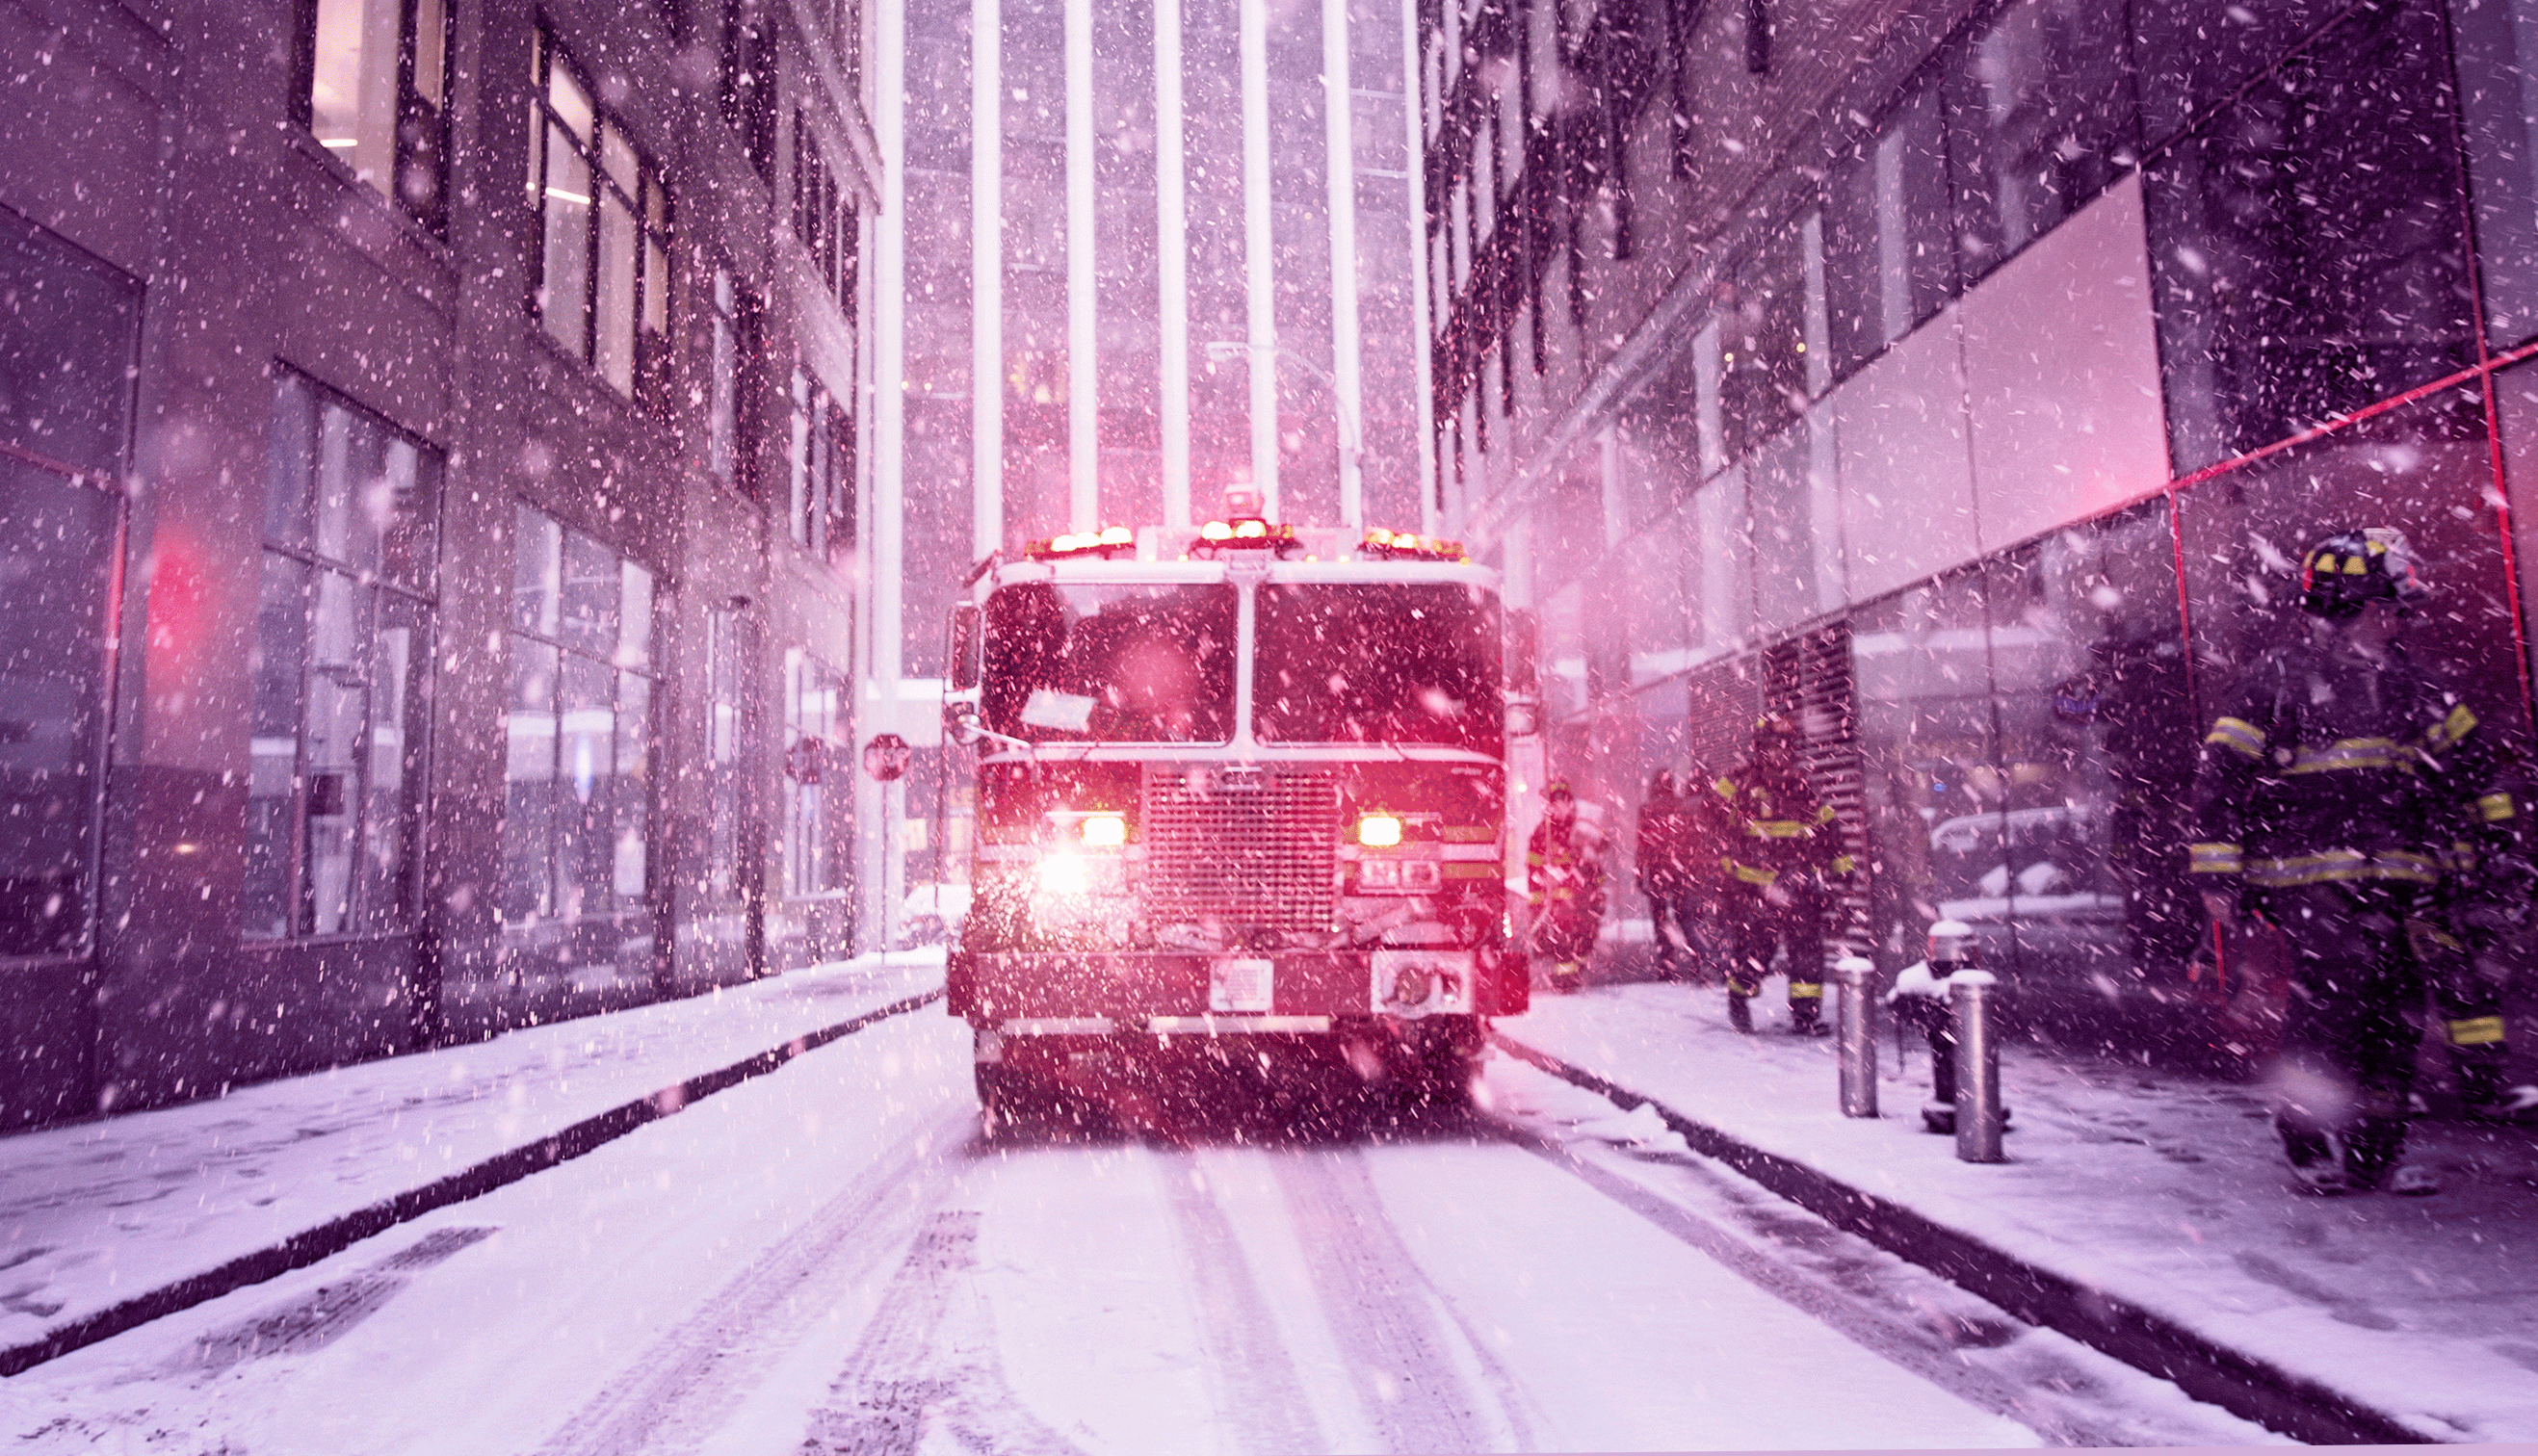 Firetruck on snowy street.